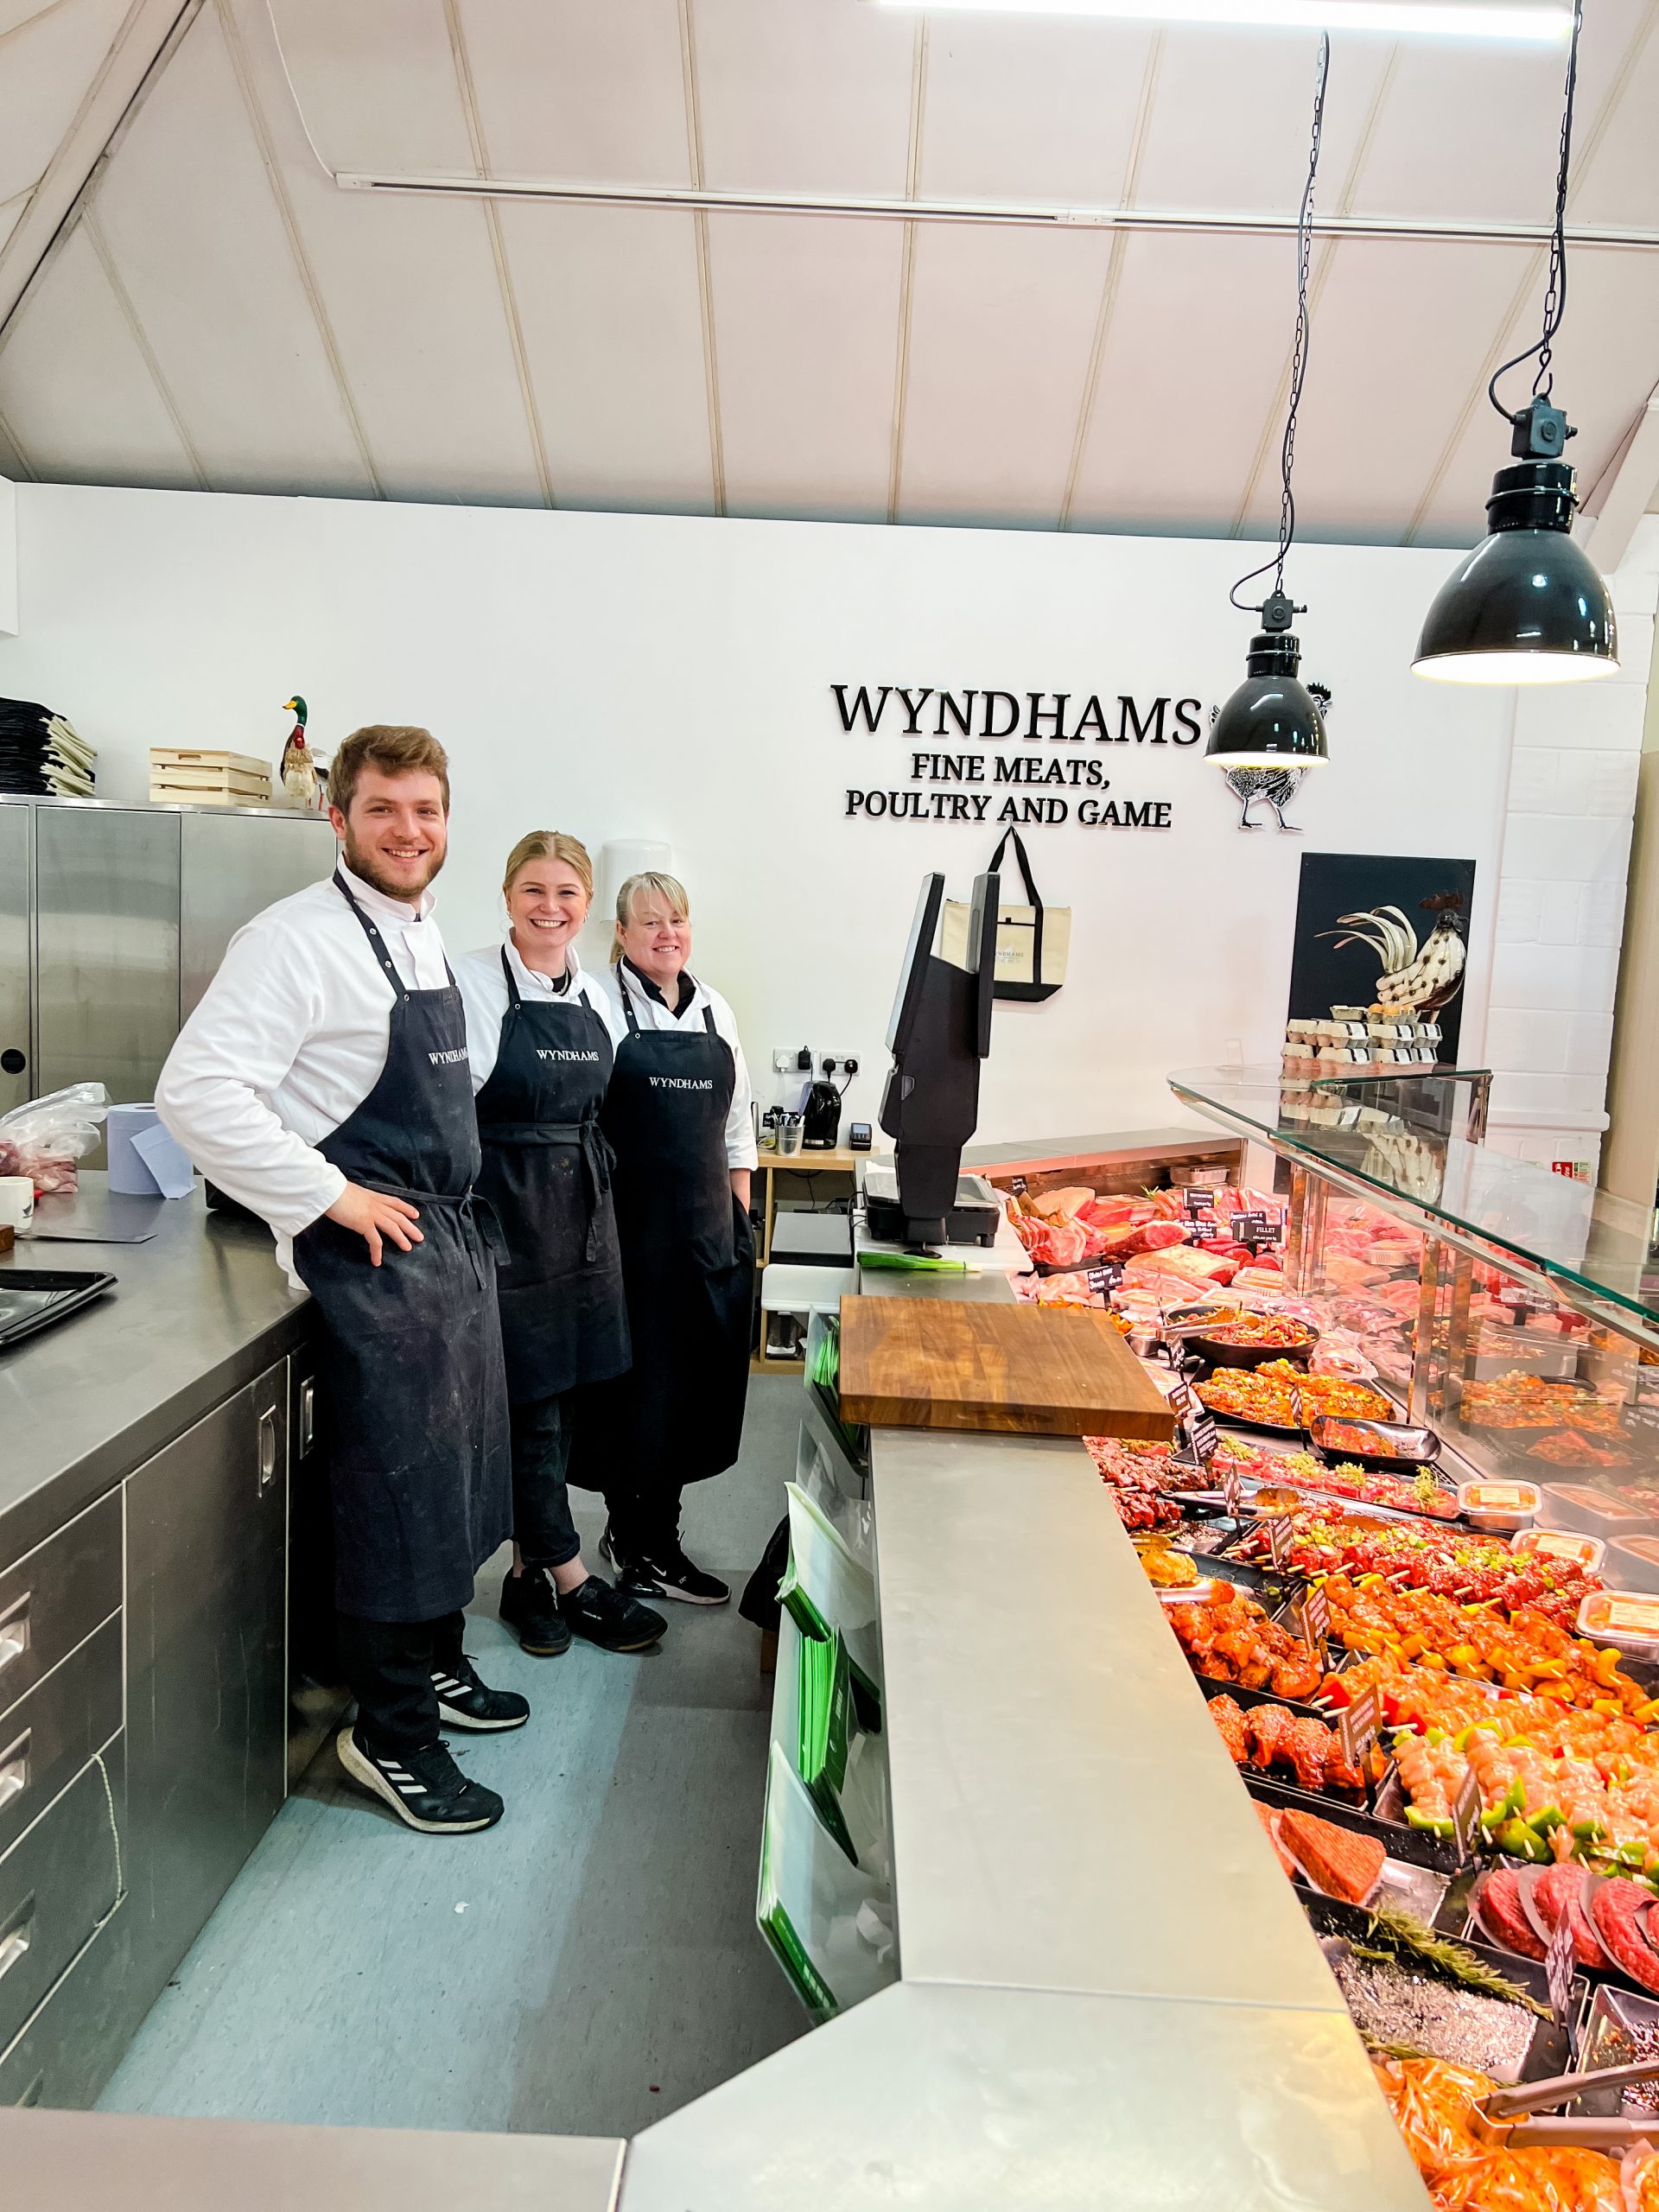 Wyndham's